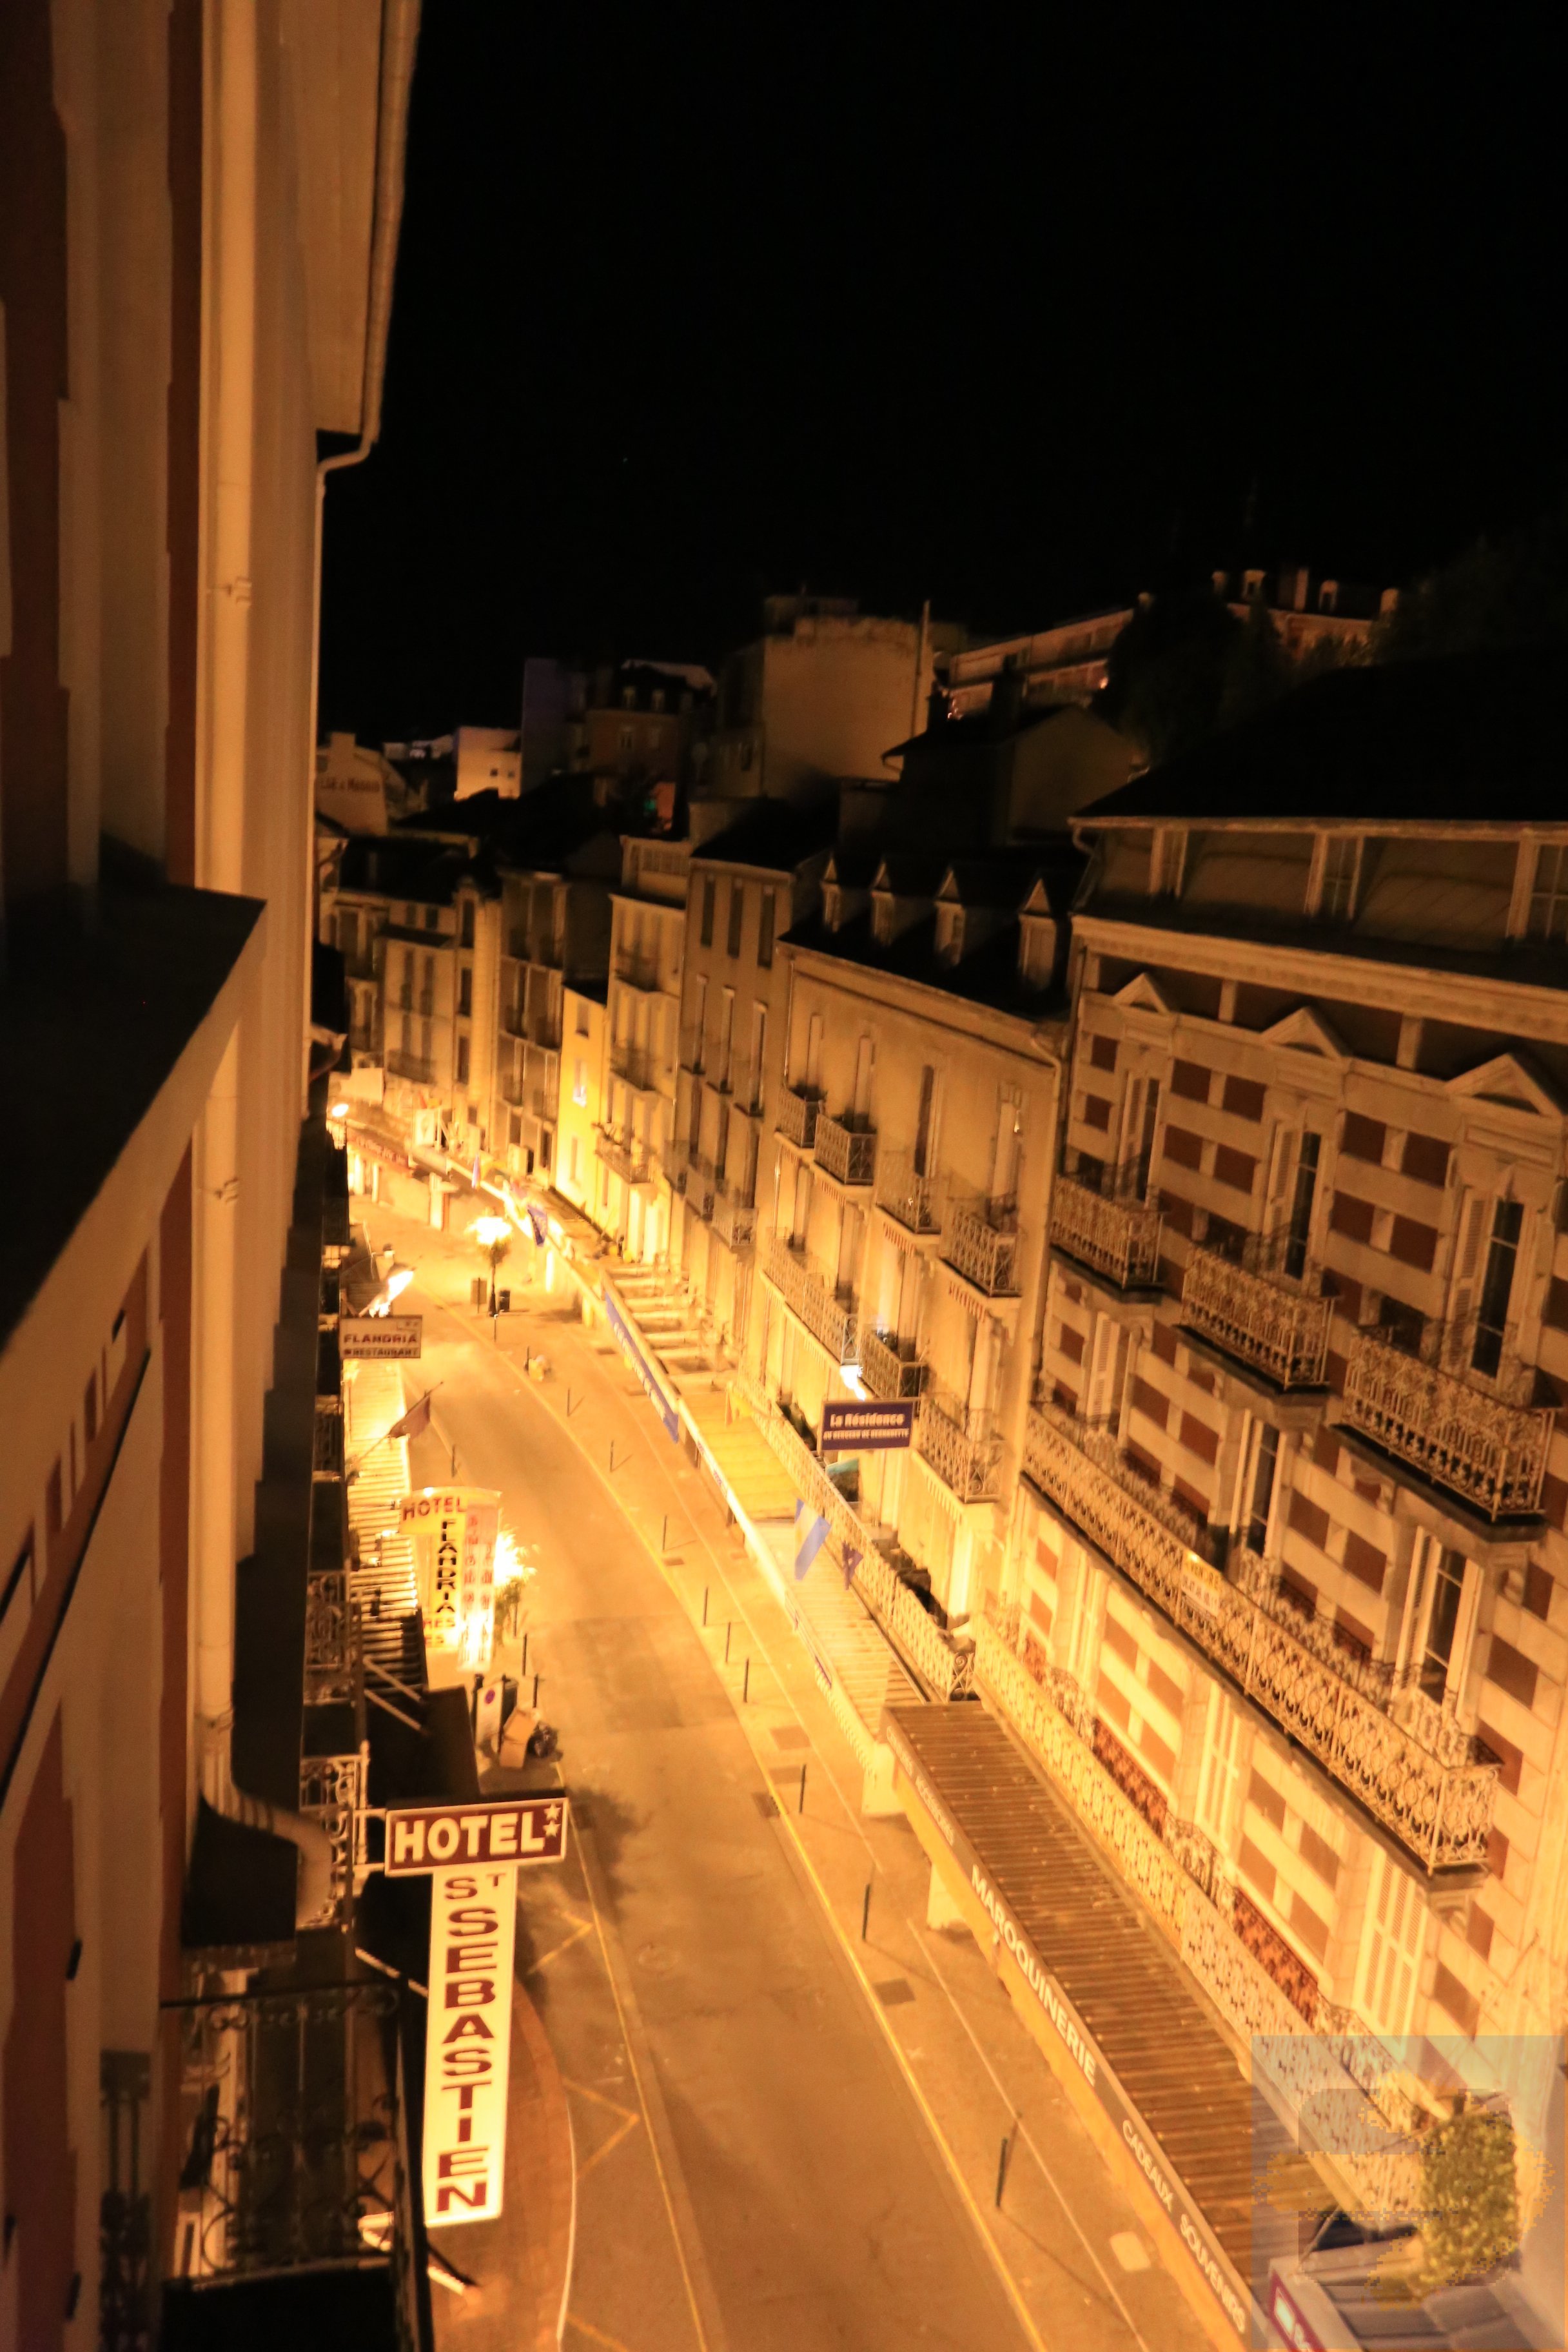 Main street in old Lourdes